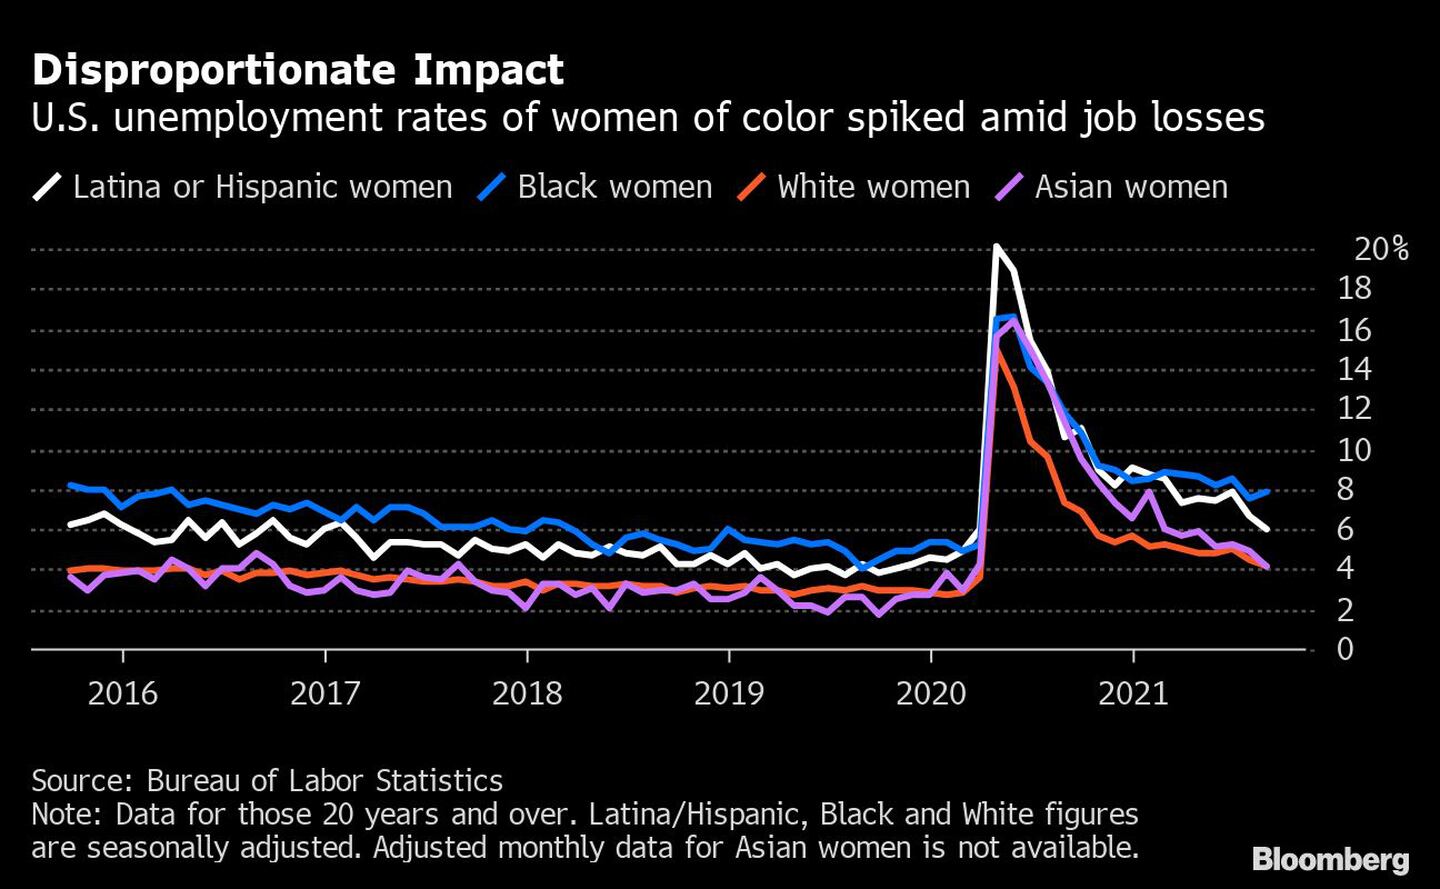 Impacto desproporcionado
Las tasas de desempleo de las mujeres de color en EE.UU. se dispararon en medio de la pérdida de empleos
Blanco: mujeres latinas o hispanas
Azul: mujeres negras
Naranja: mujeres blancas
Morado: mujeres asiáticasdfd